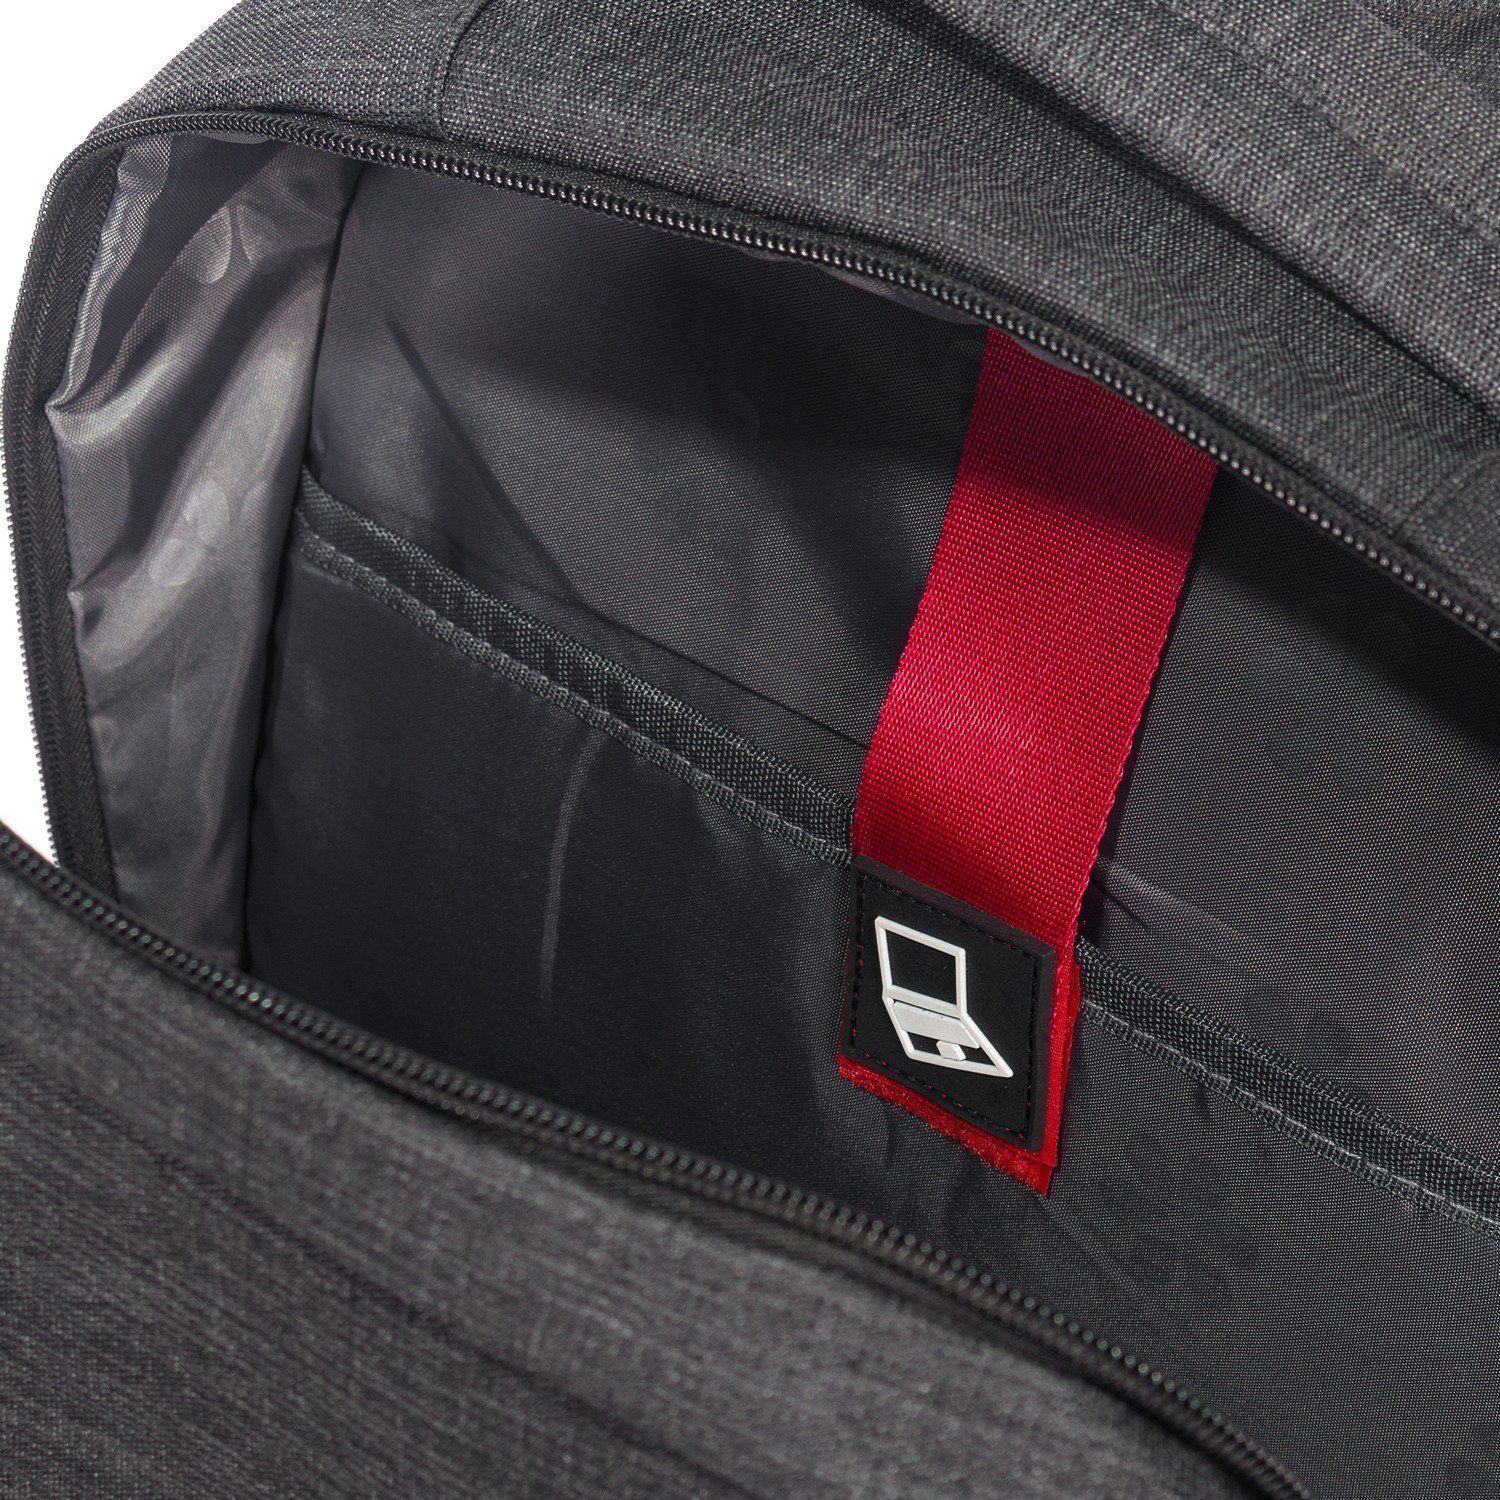 Рюкзак мужской городской, черный однотонный, с широкими лямками, USB и светоотражающими вставками, о